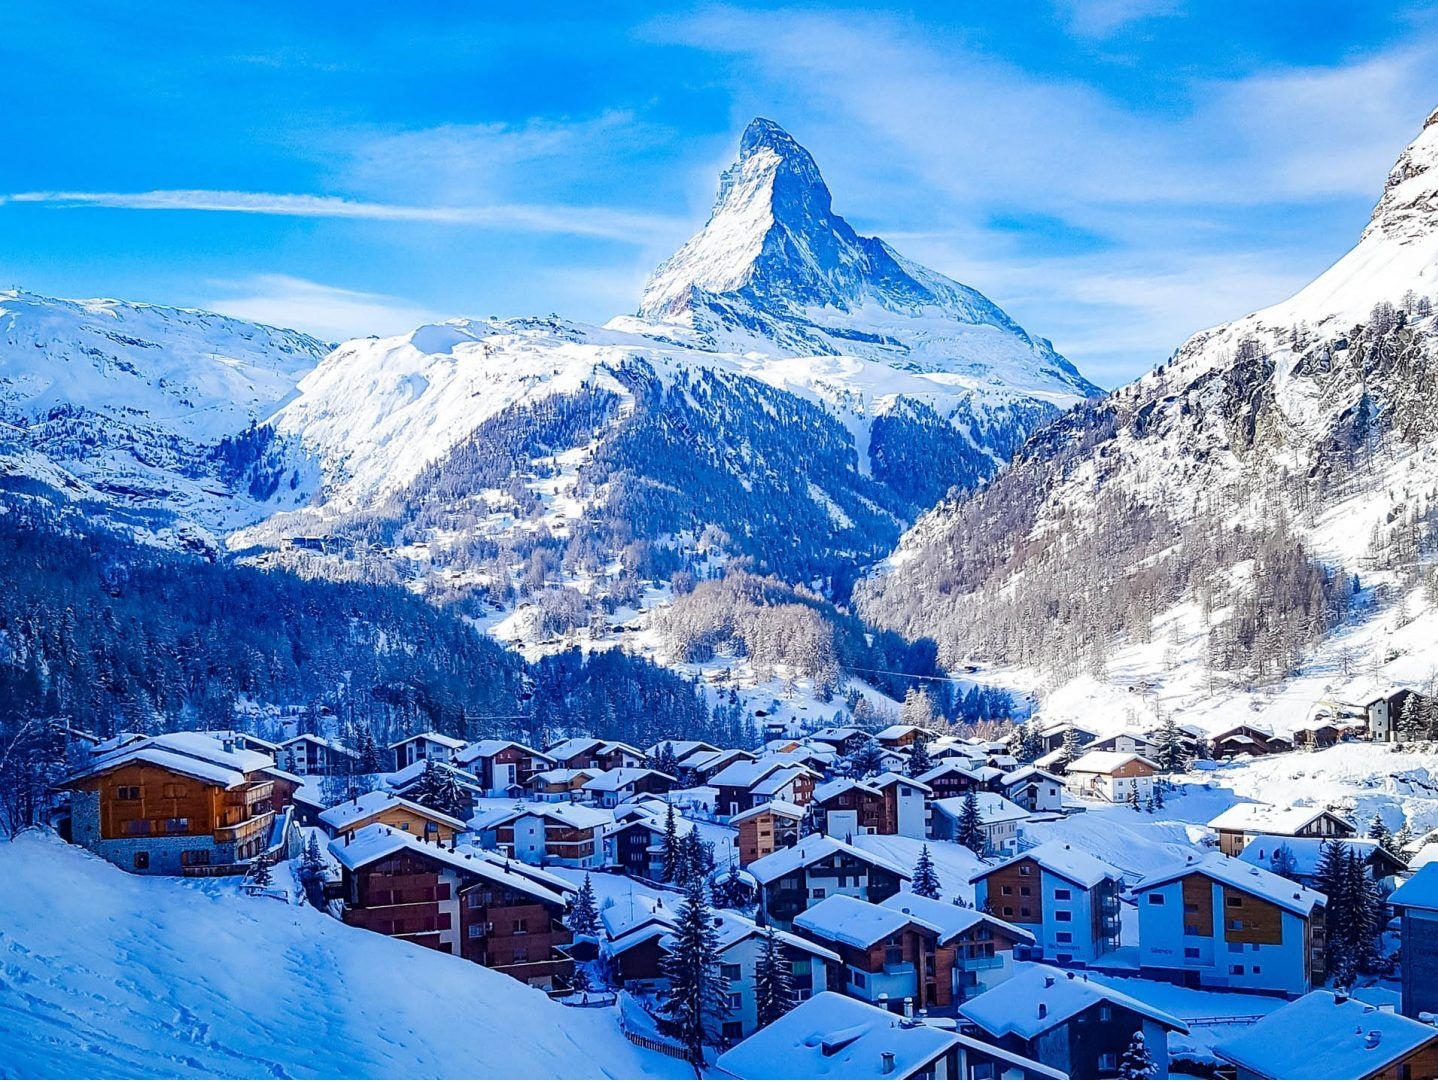 سوئیس در زمستان - عکس طبیعت زیبای سوئیس